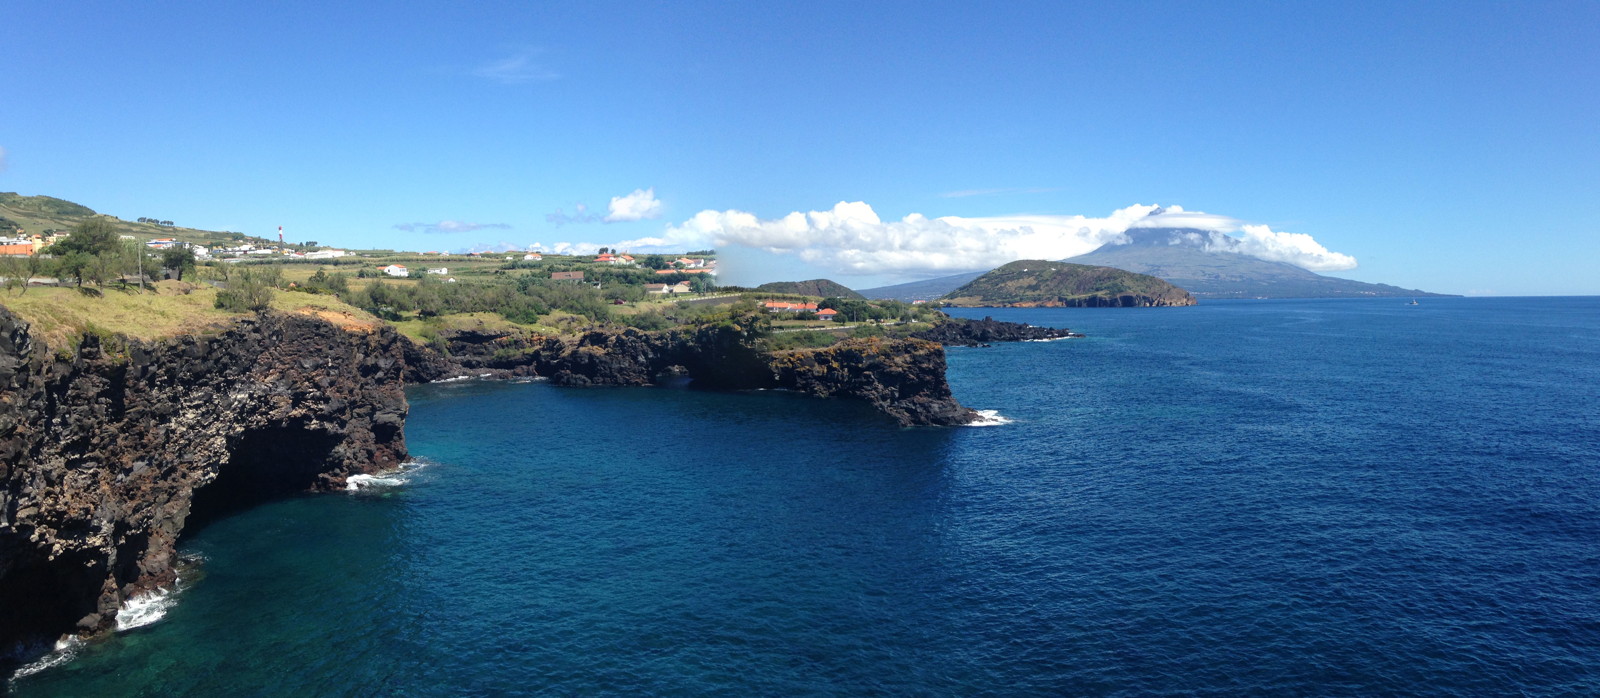 Point de vue vers l'île de Pico